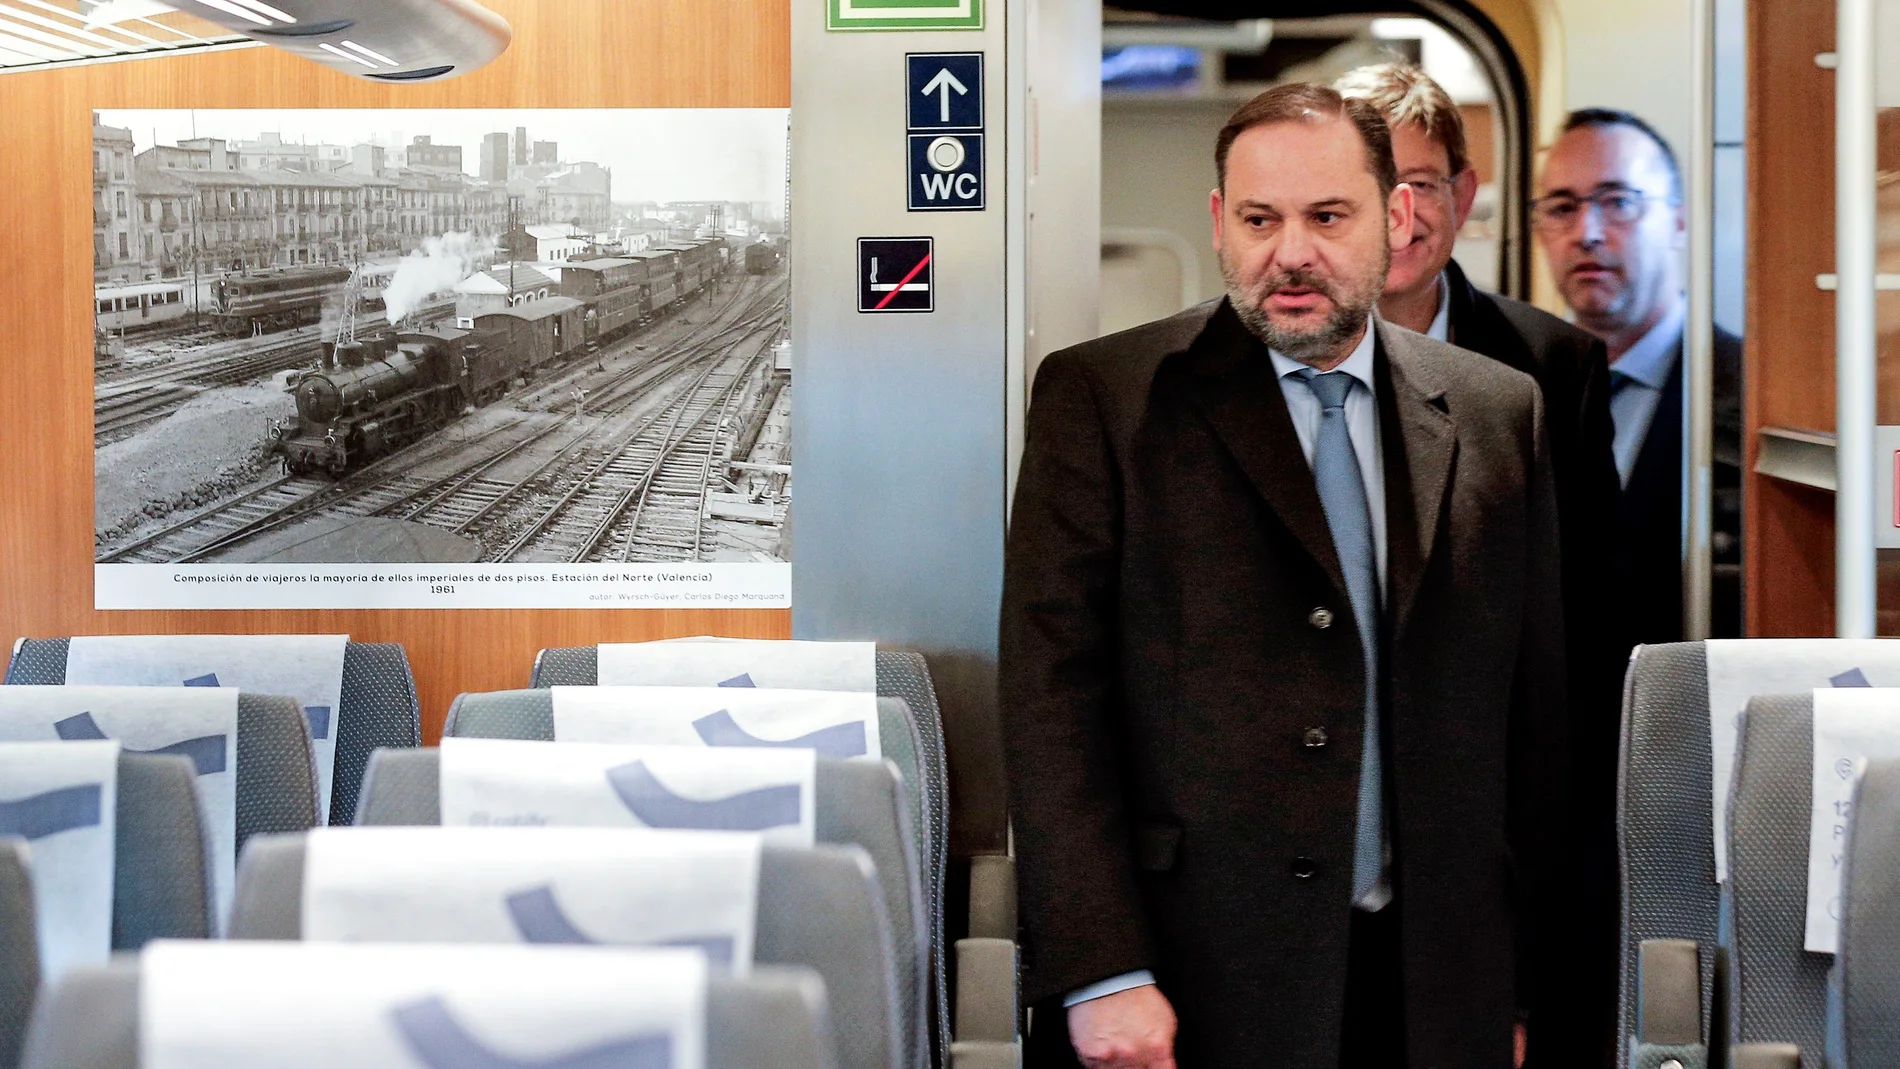 El ministro Ábalos inaugura una exposición fotográfica sobre el 160 aniversario de la línea férrea Valencia-Madrid